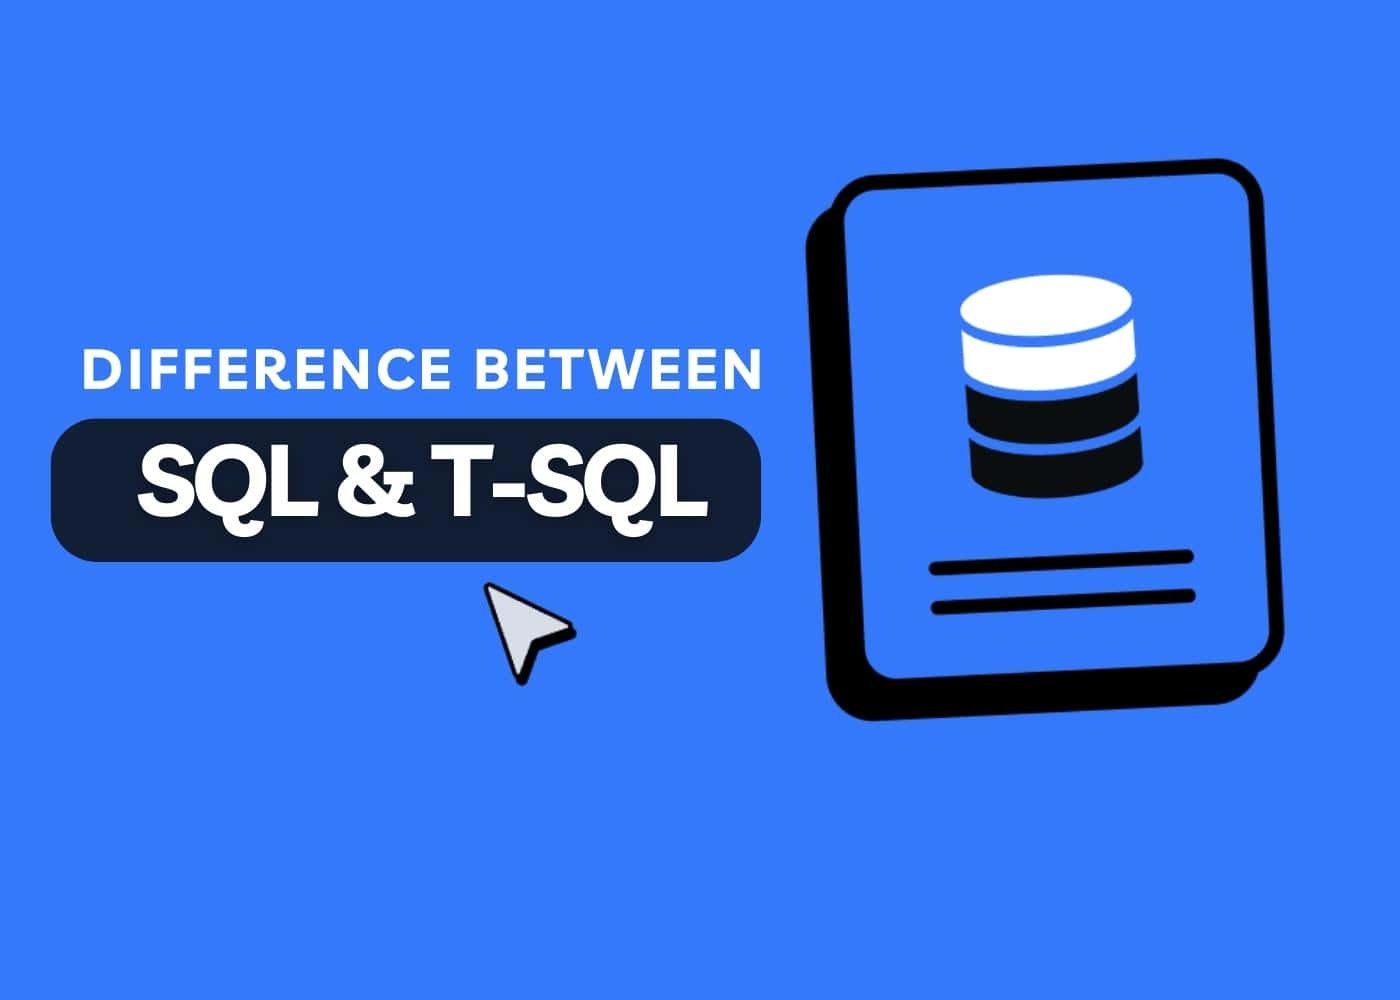 SQL vs. T-SQL